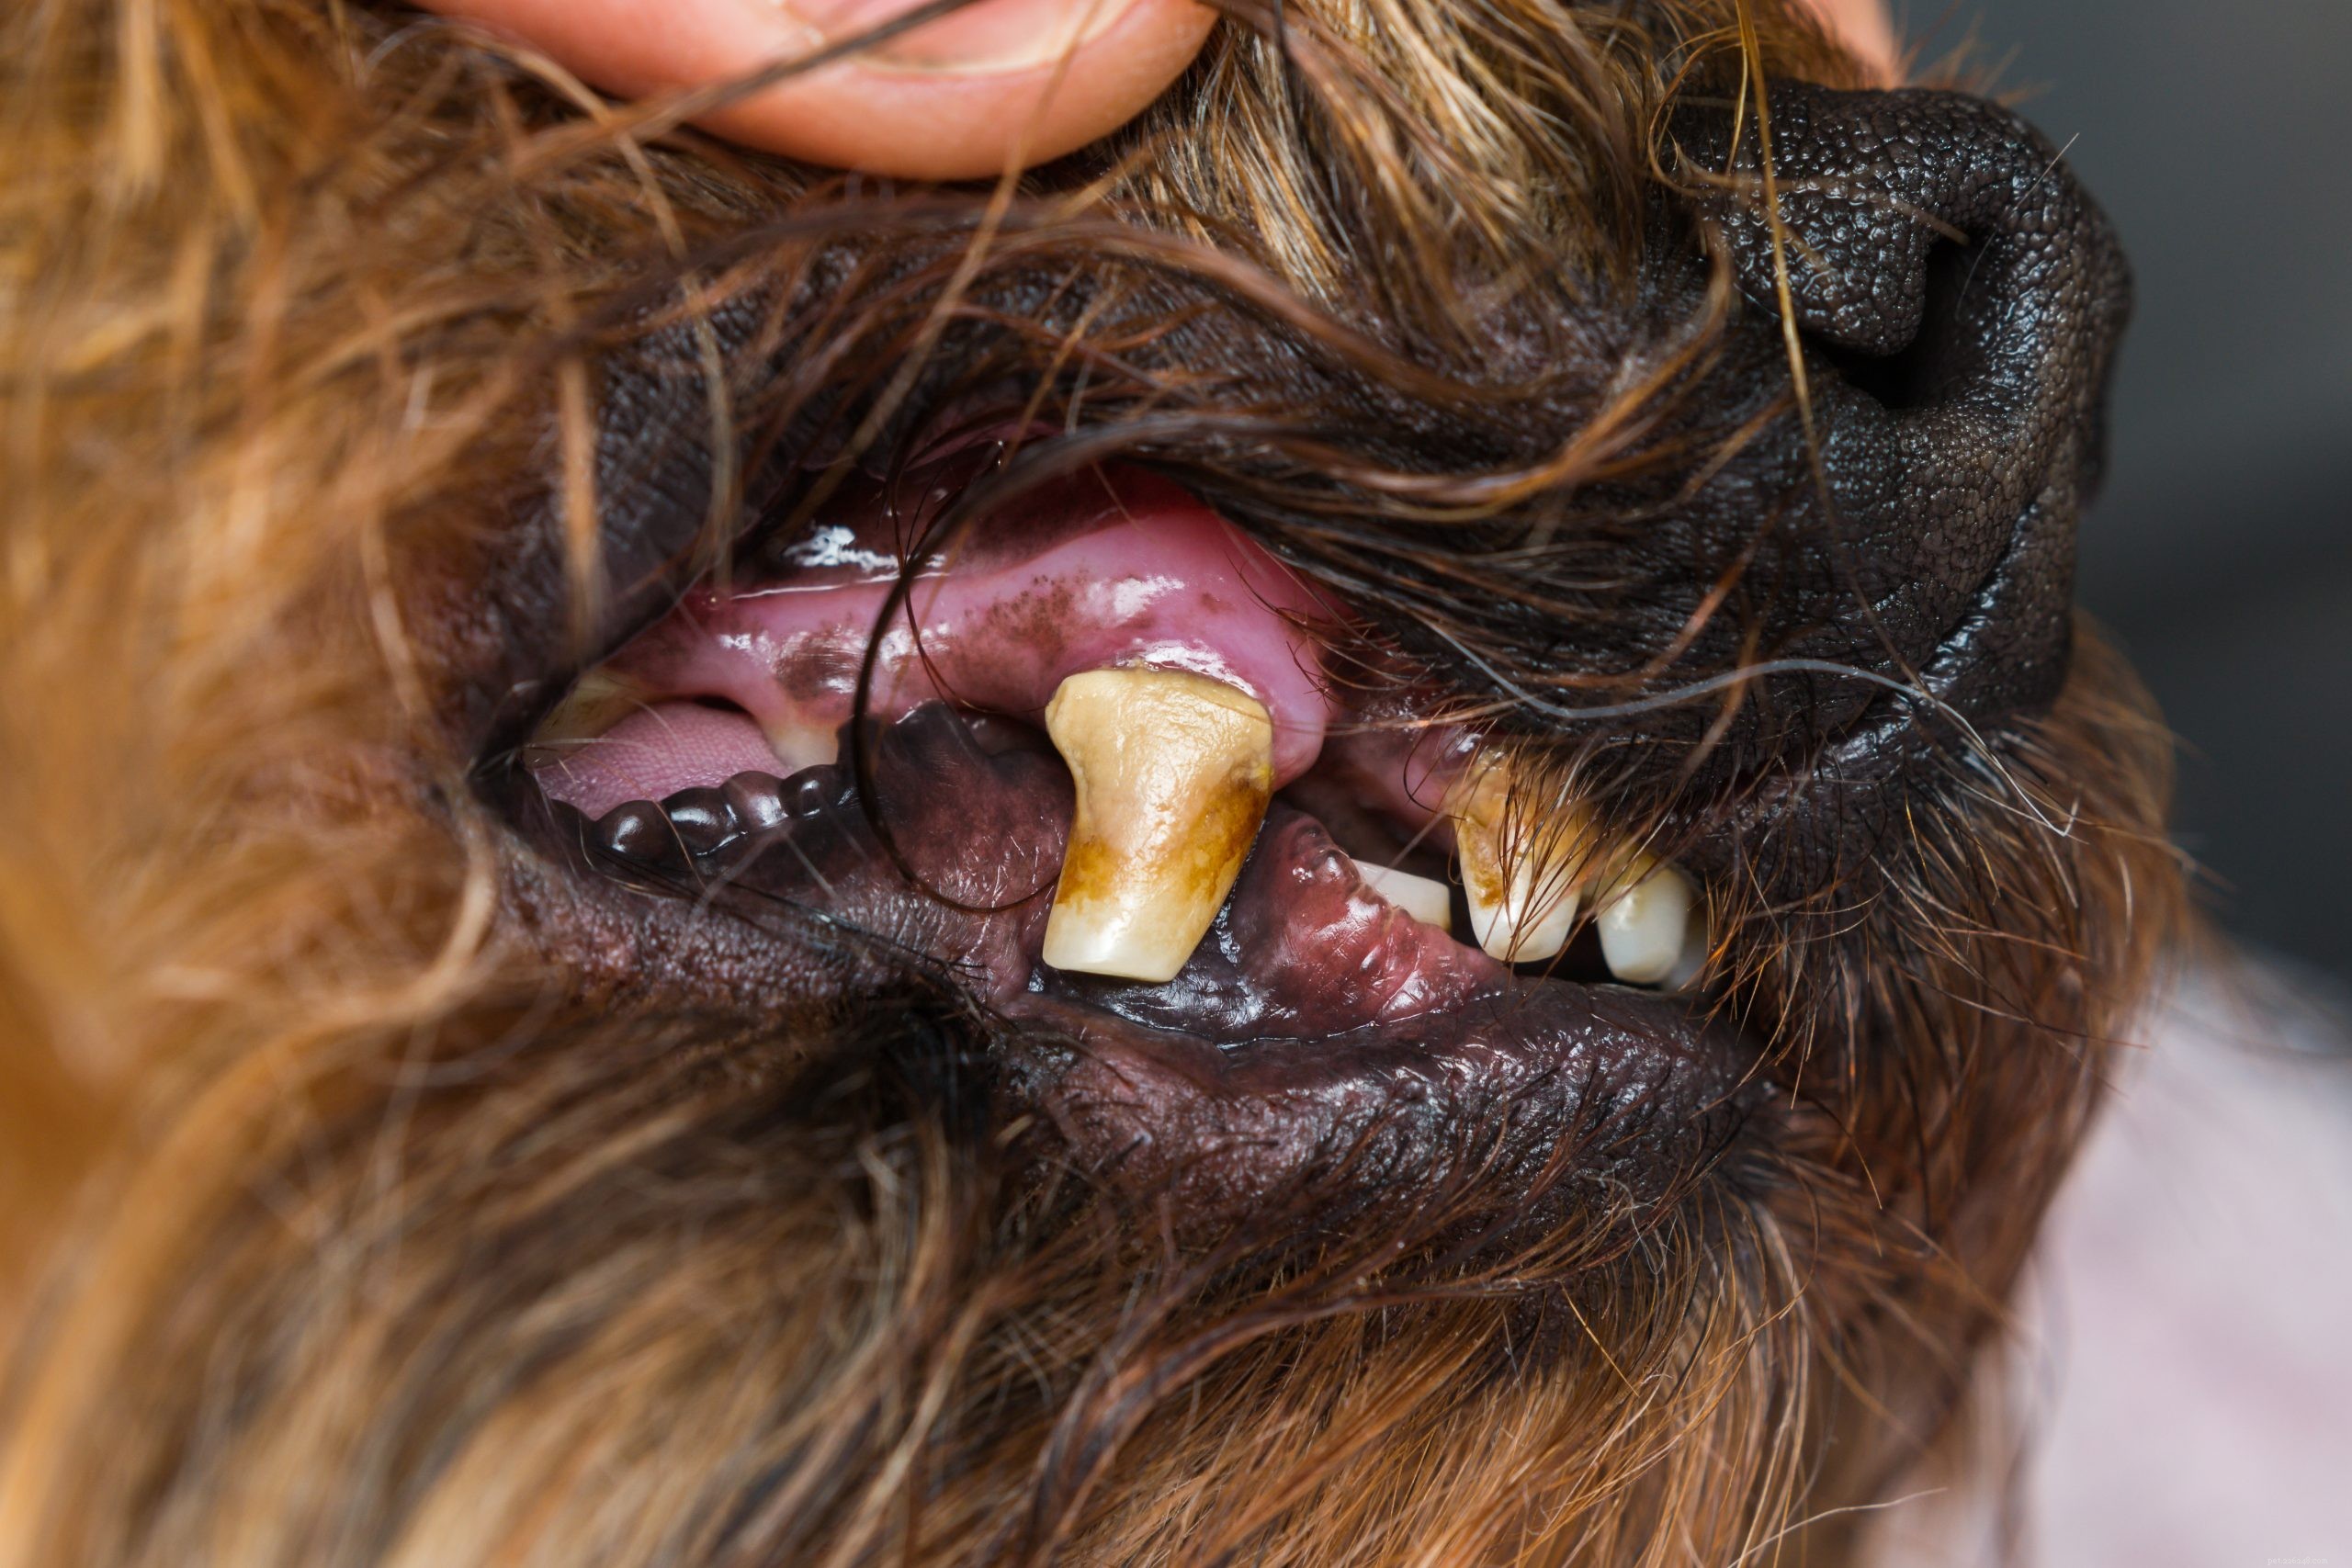 犬の歯周病：症状、病期および予防 